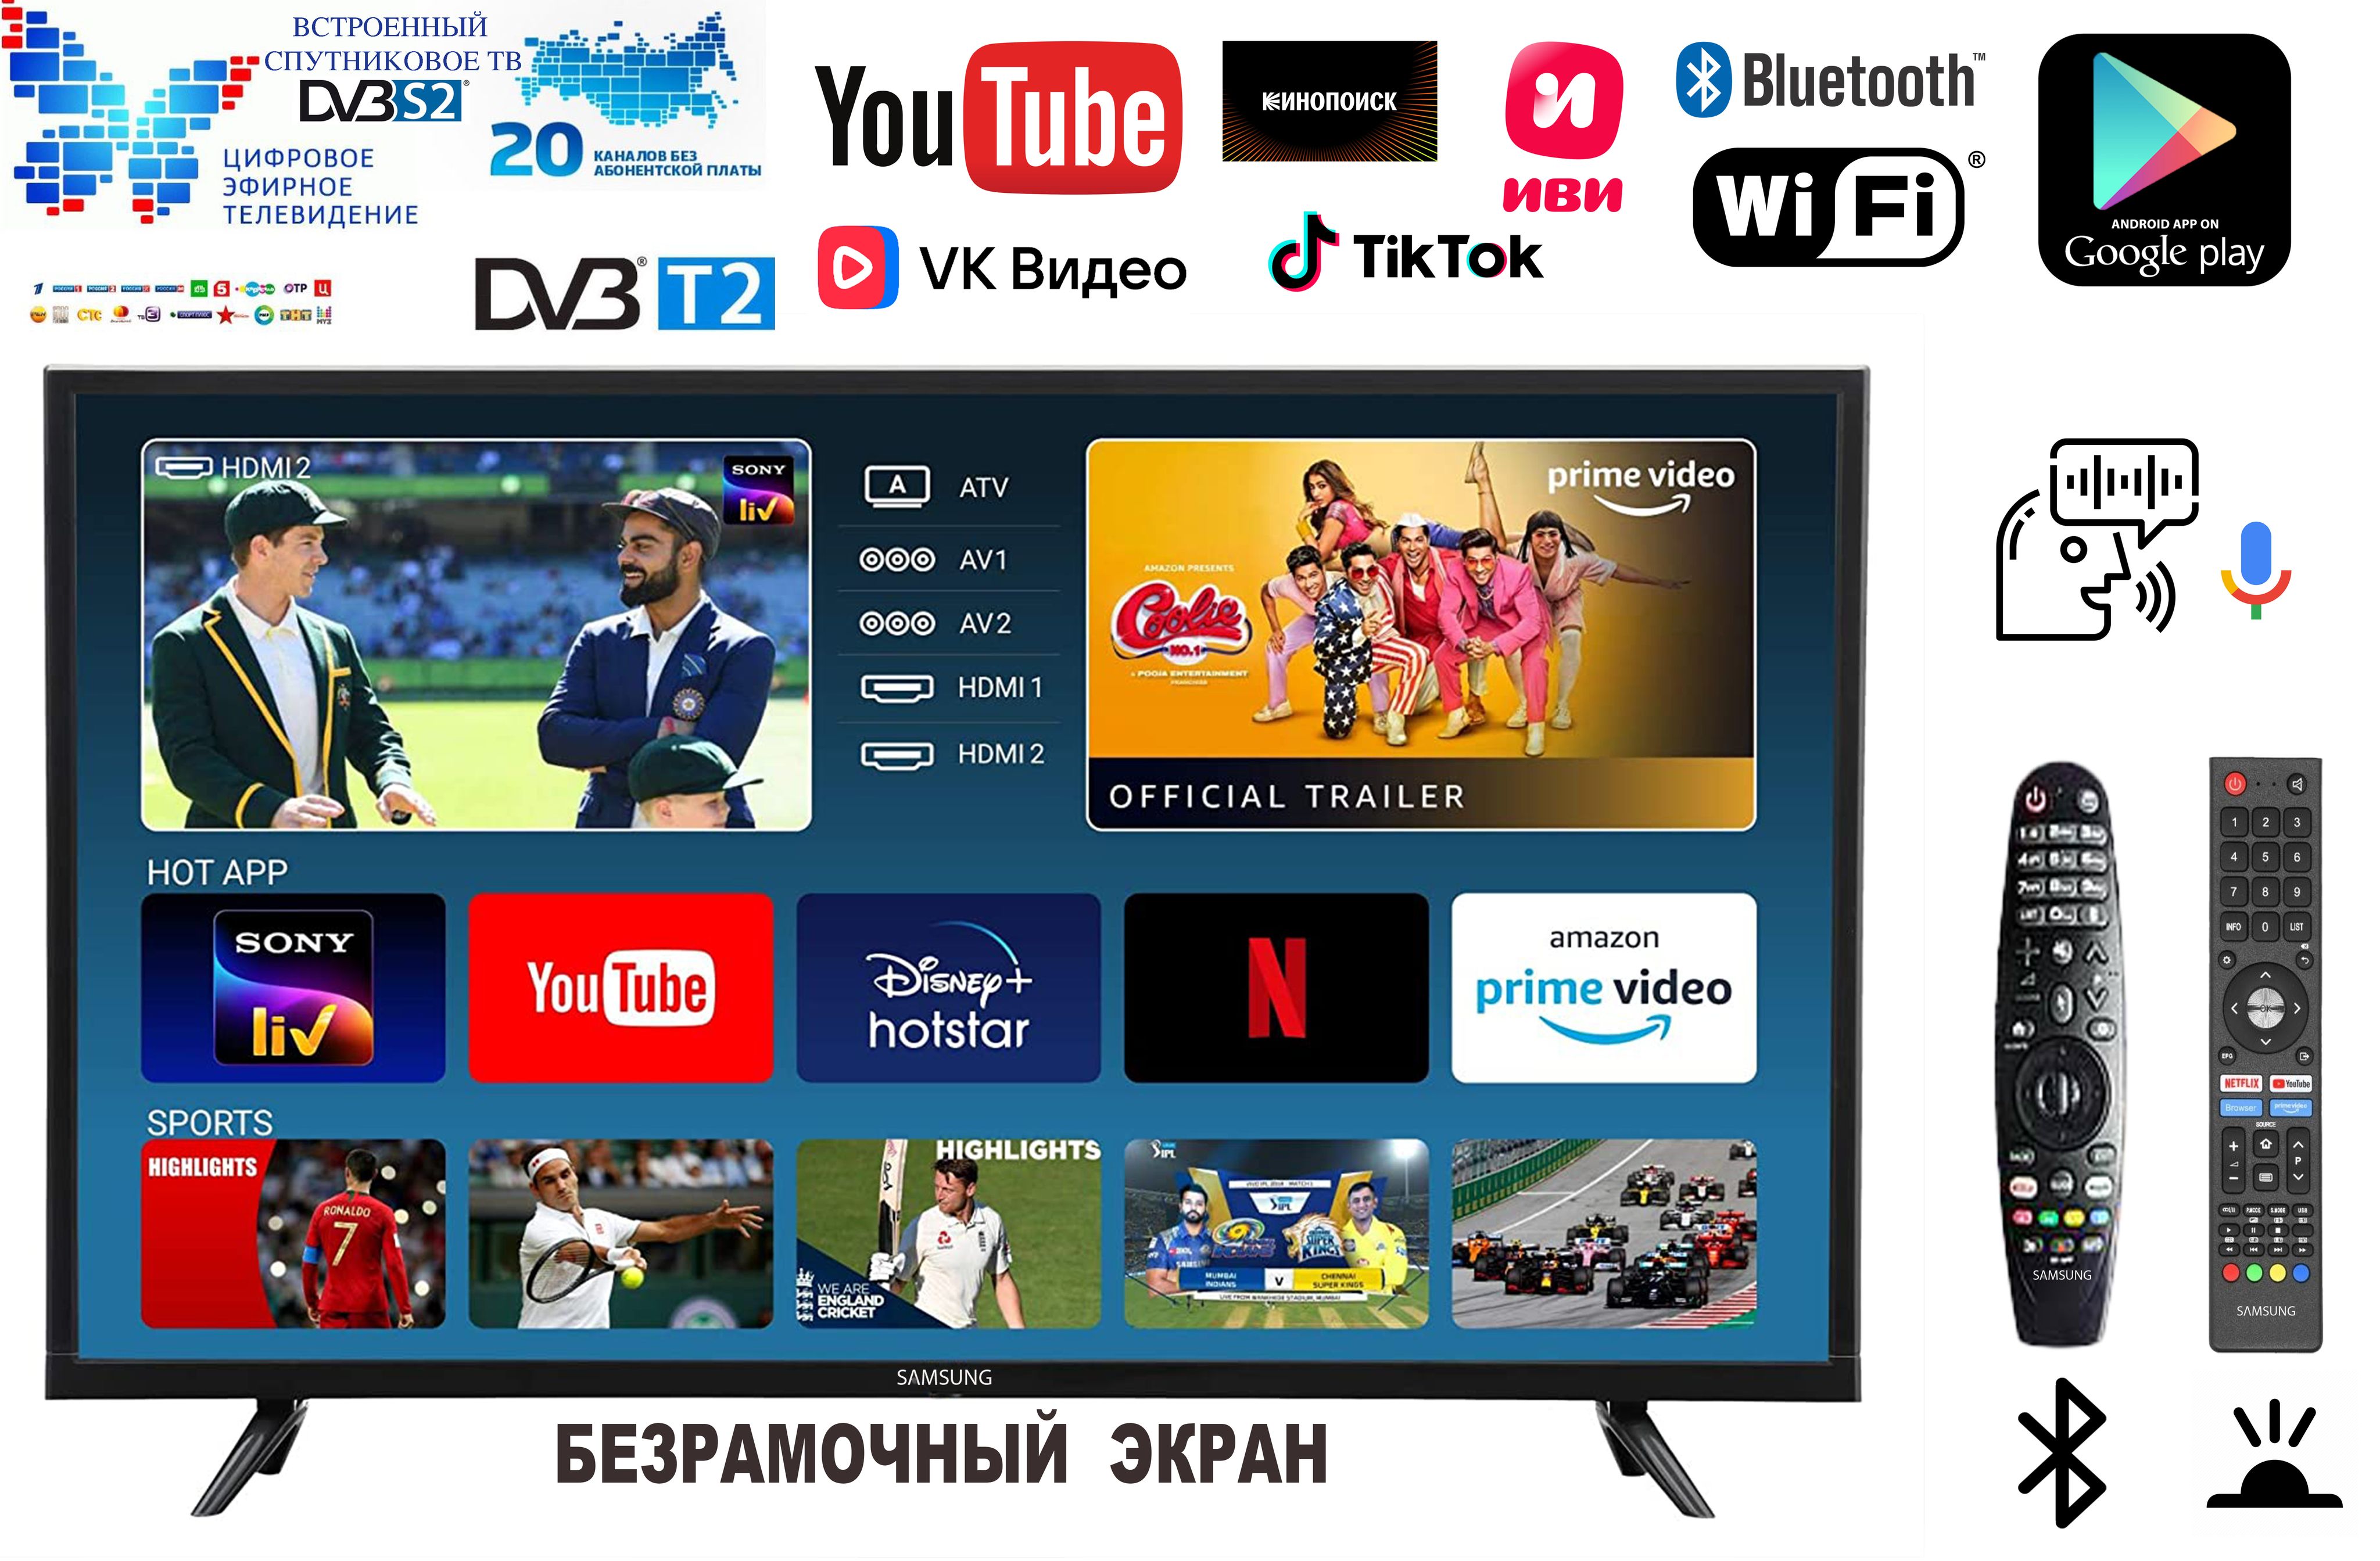 ТелевизорSamsung-Panel-AndroidTv-Безрамочныйэкран-ДУАэромышь-сголосовымуправлением32"FullHD,черный